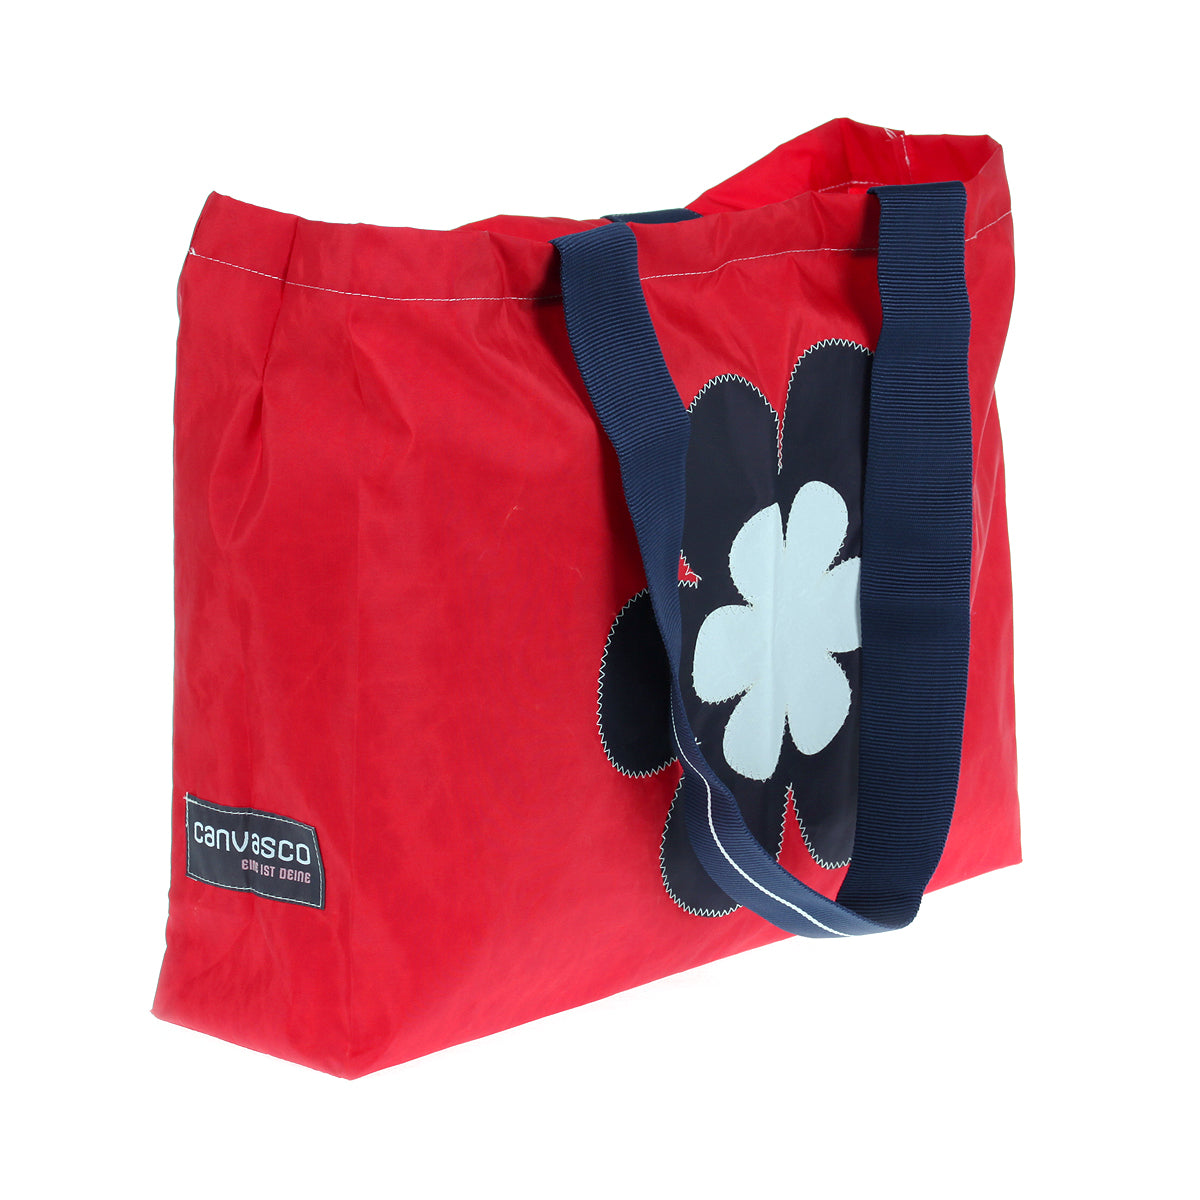 Strandtasche Badetasche CANVASCO "Beach" / Segeltuch rot / Gurt blau-weiß / Motiv Blume schwarz-weiß